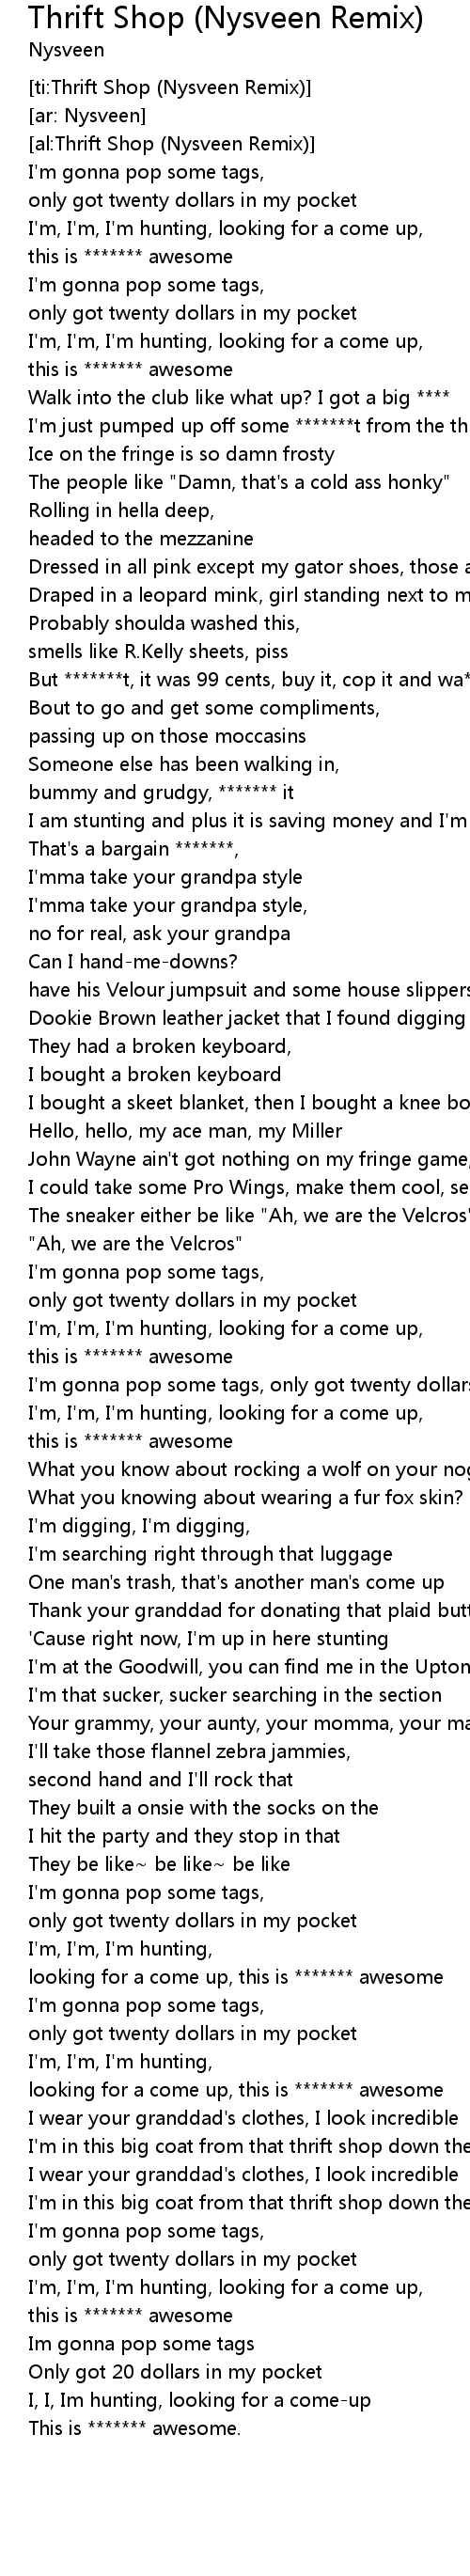 Thrift Shop Nysveen Remix Lyrics Follow Lyrics 20 dollars in my pocket lyrics mp3 & mp4. thrift shop nysveen remix lyrics